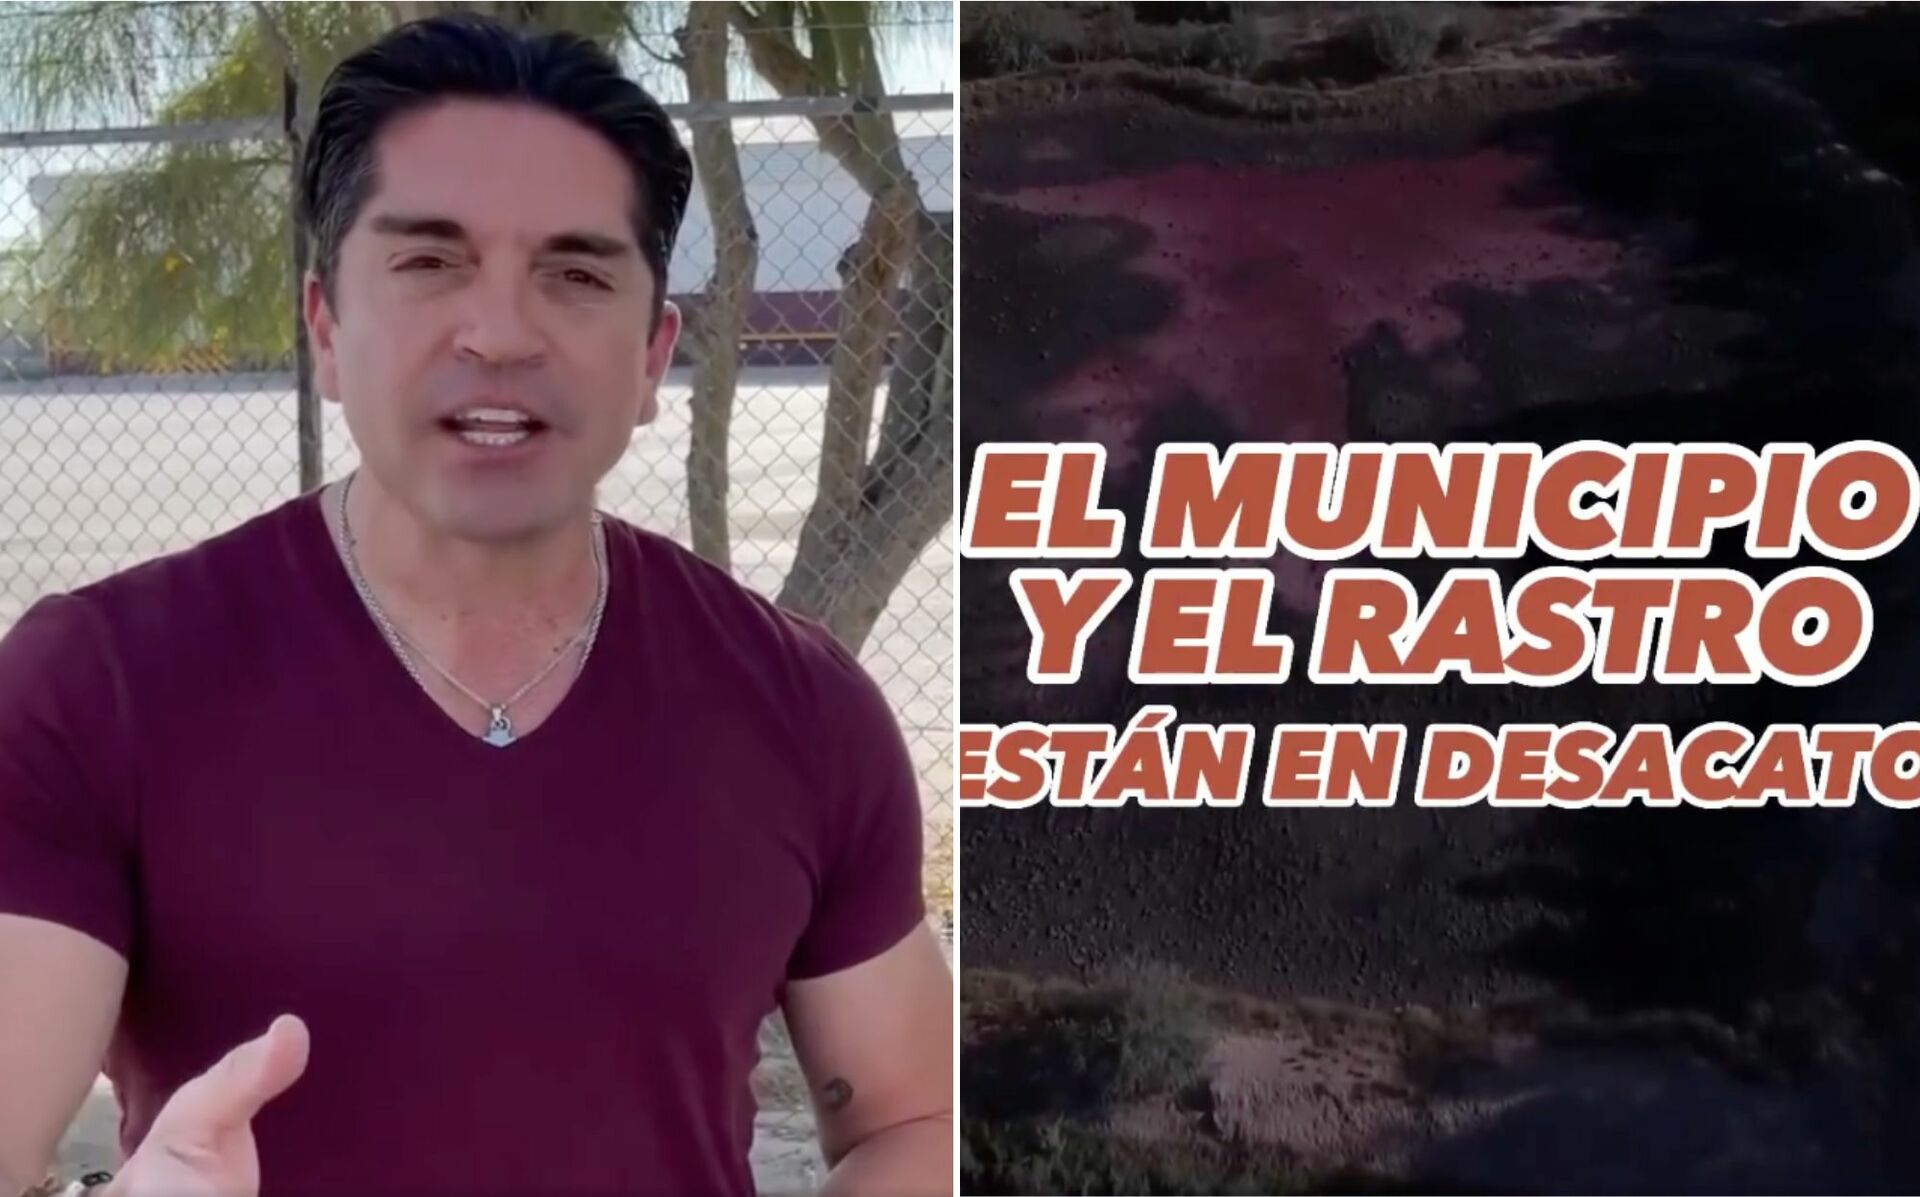 Rastro de Torreón opera en desacato, acusan; presentan denuncia tras sanción de Conagua